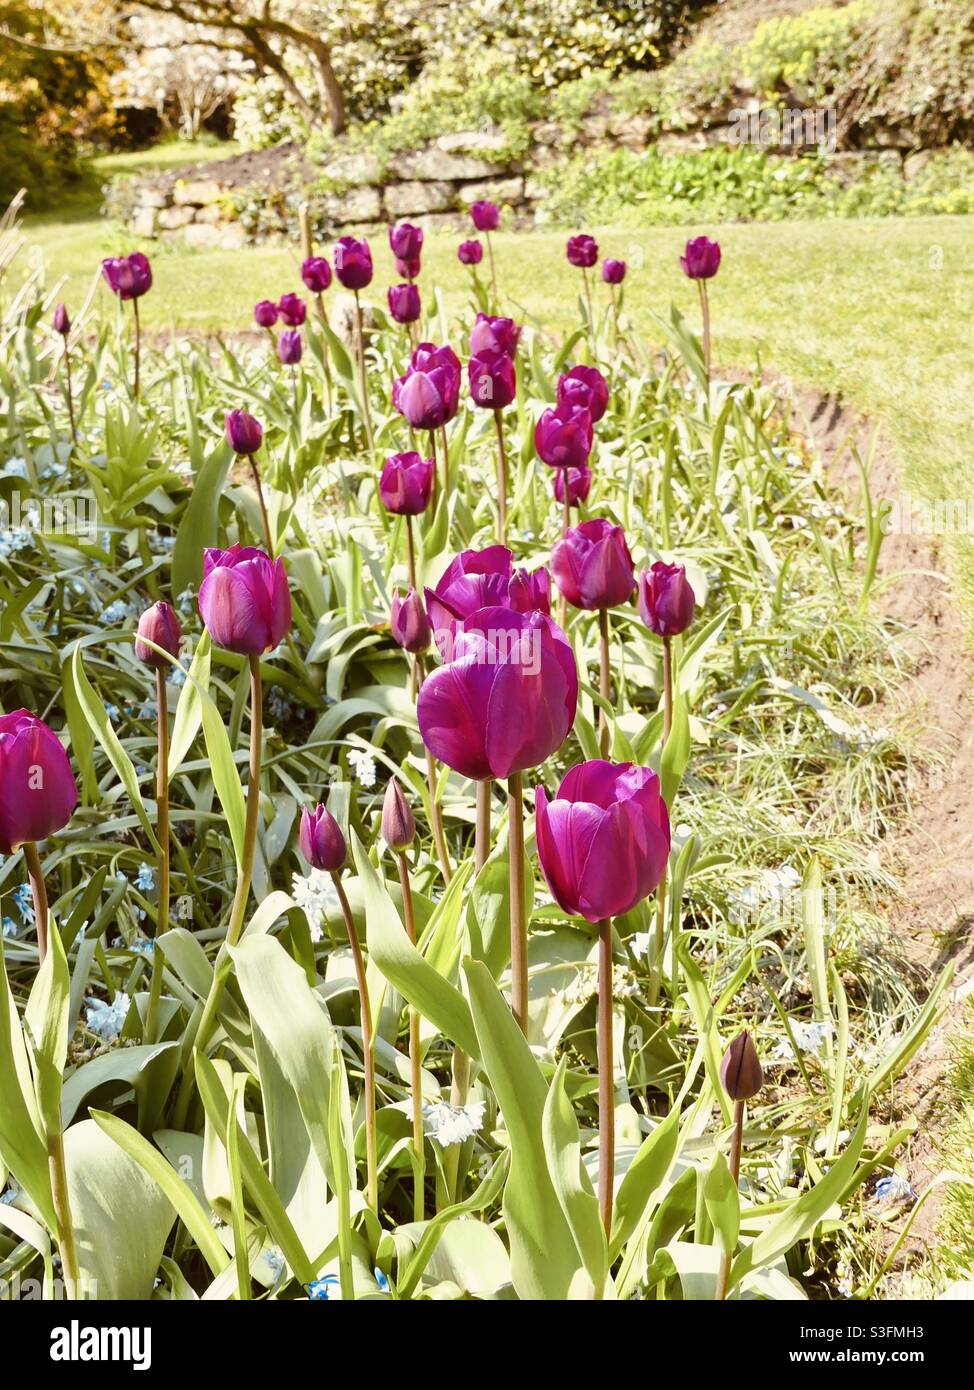 Runaway Tulips Stock Photo